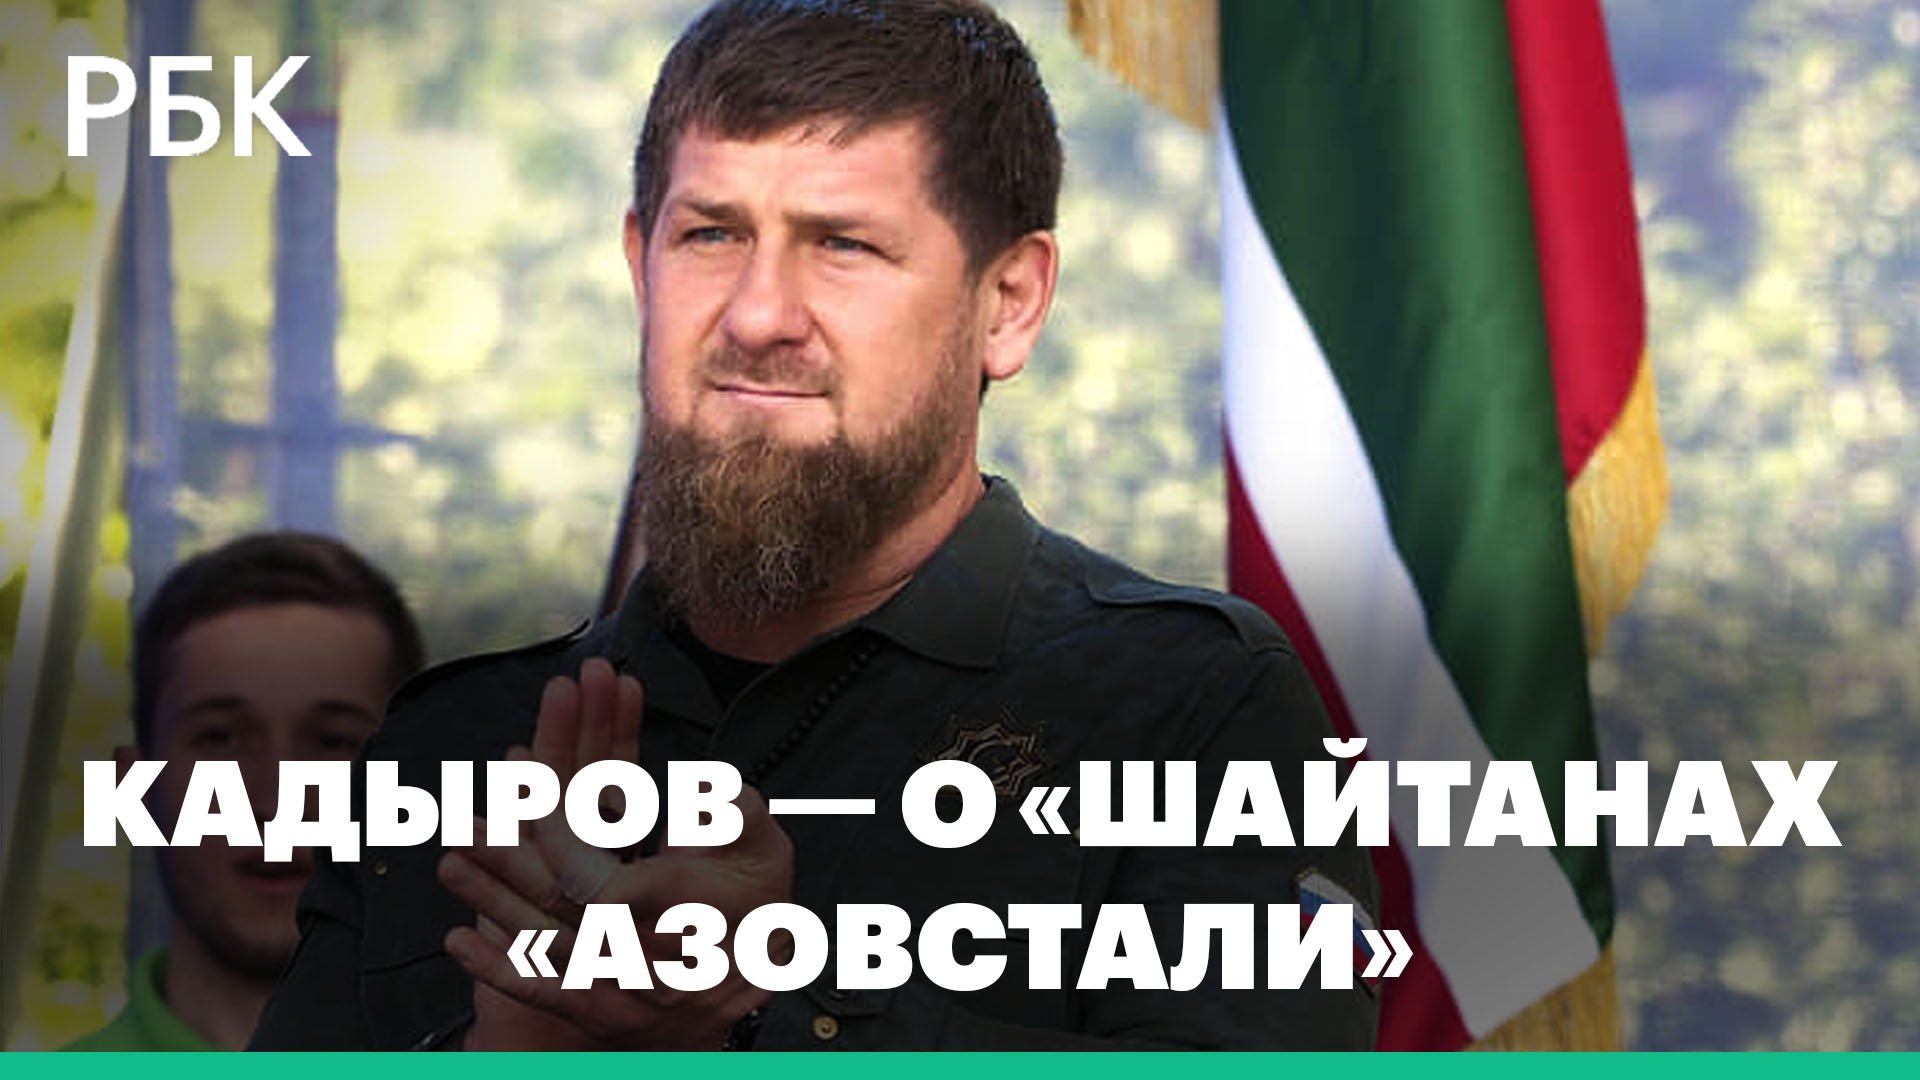 Кадыров назвал защитников «Азовстали» «шайтанами». Глава Чечни призвал Украину не слушать НАТО